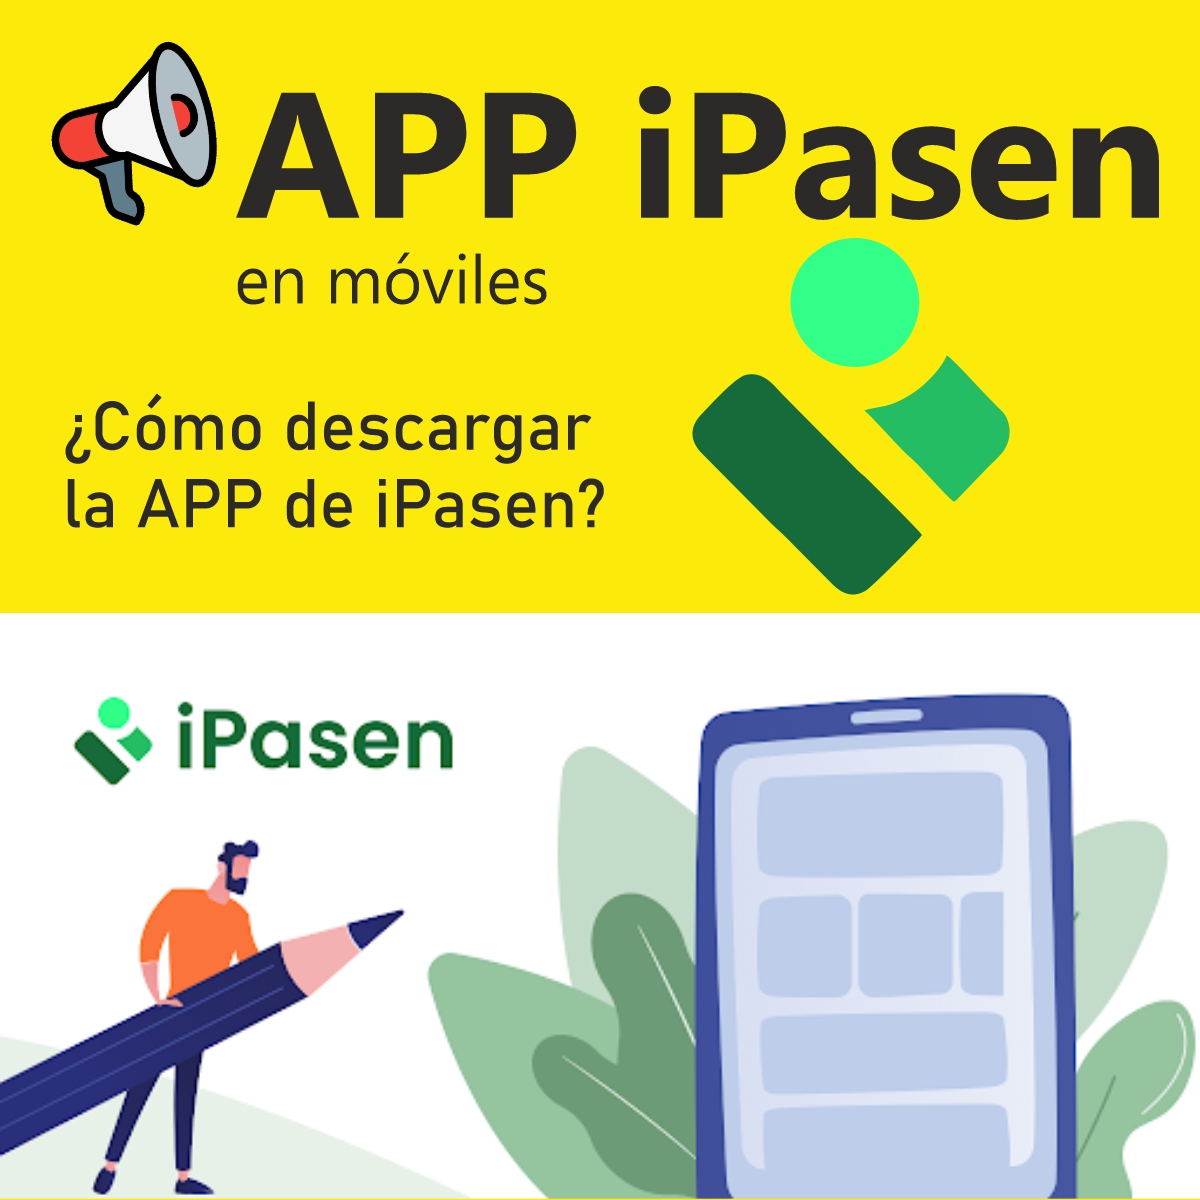 Descargar la APP de iPasen